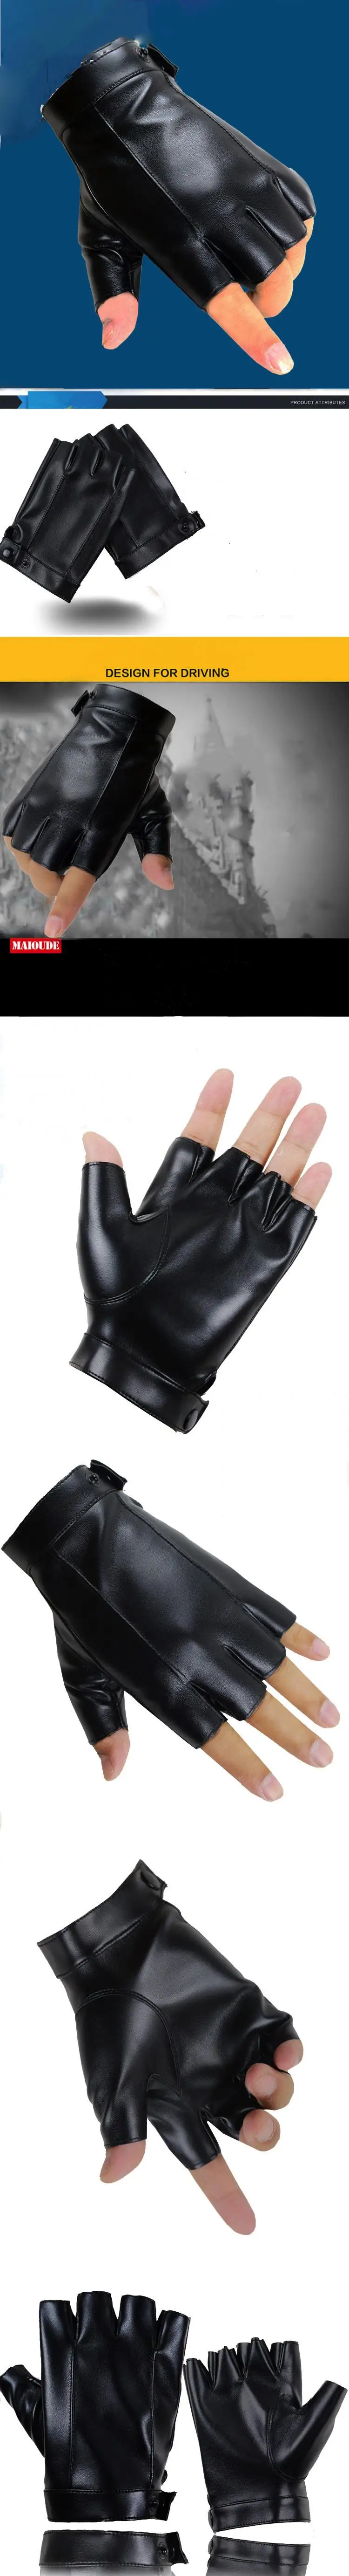 Длинные перчатки для мужчин, женские вязаные рукавицы, из искусственной кожи, без пальцев, спортивные, для вождения, для уличных танцев, для